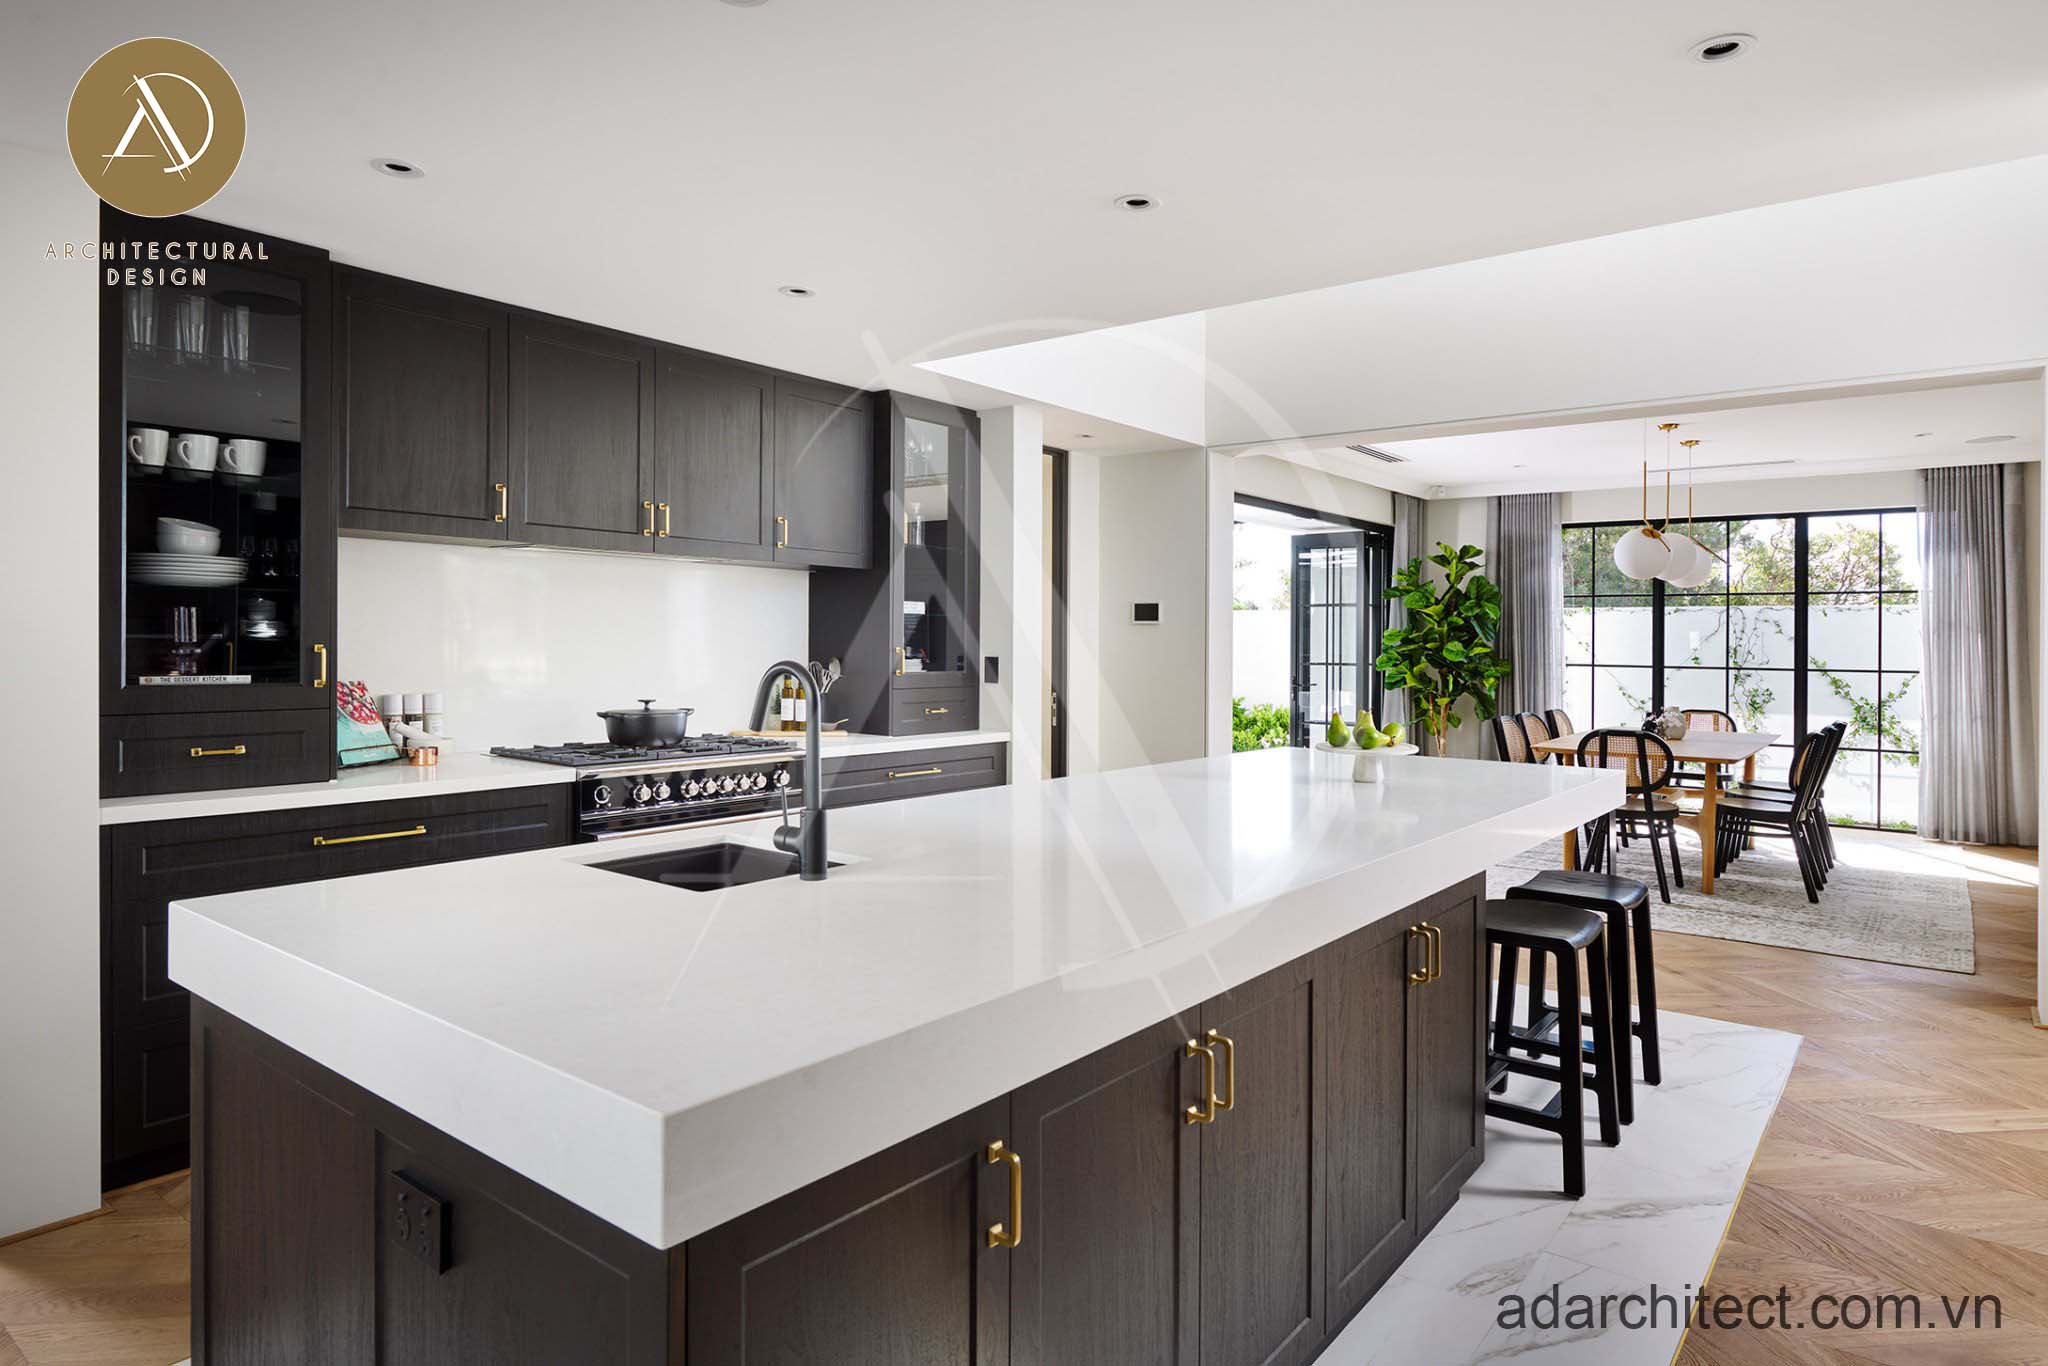 Nội thất nhà bếp tích hợp nhiều vật dụng giúp tiết kiệm mọi diện tích cho mẫu nhà 2 tầng mặt tiền 9m hiện đại